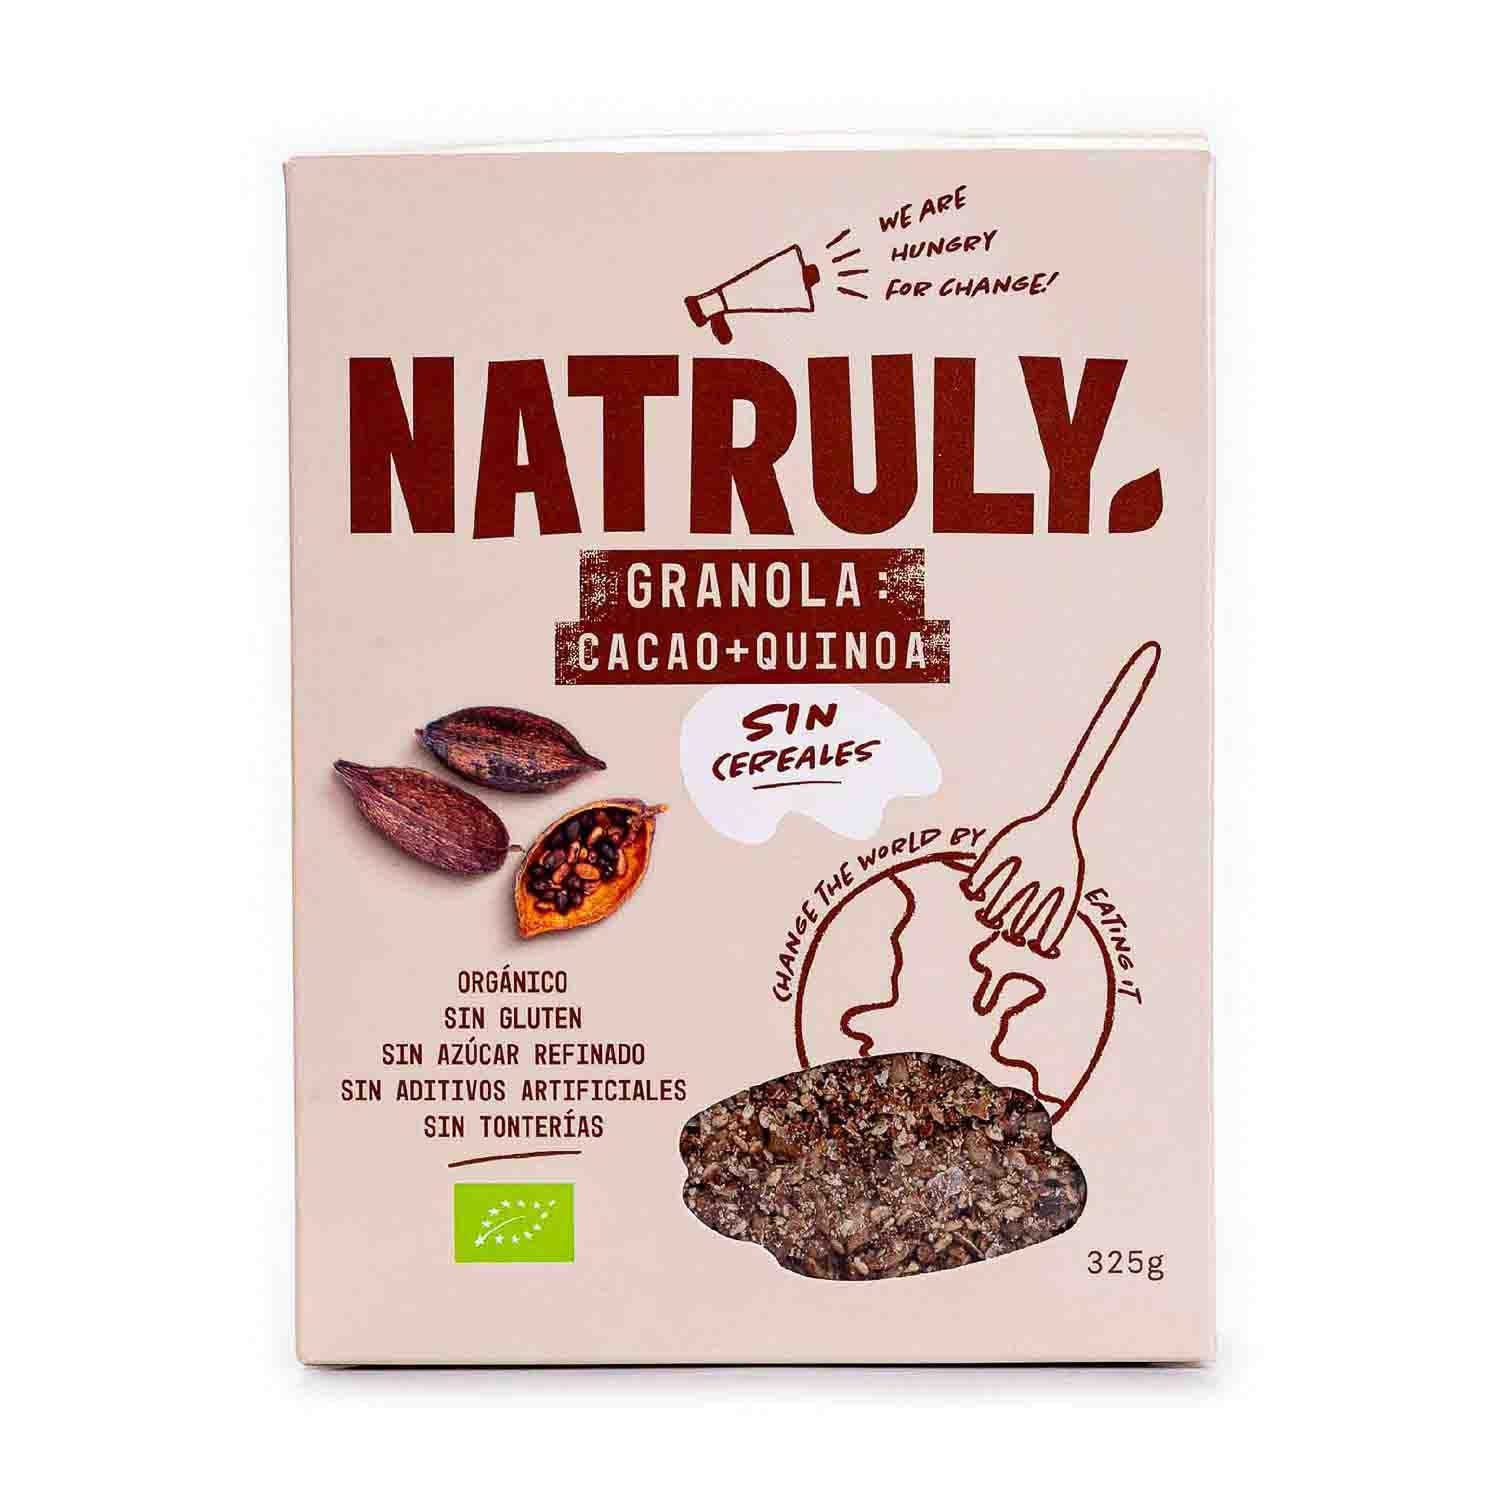 Galletas sabor cacao bio 125g natruly